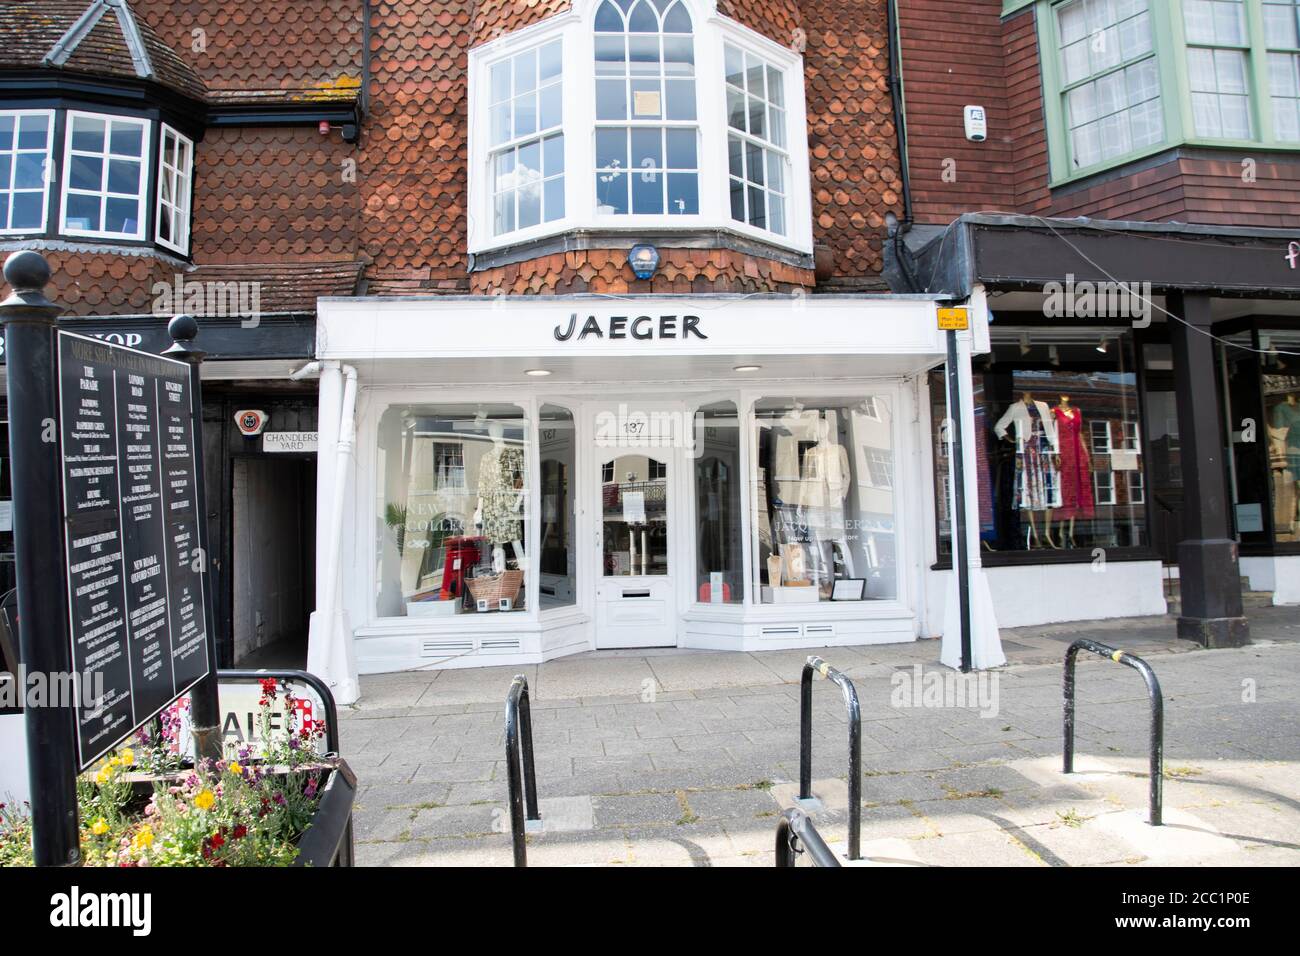 Boutique de vêtements Jaeger sur Marlborough High Street Banque D'Images